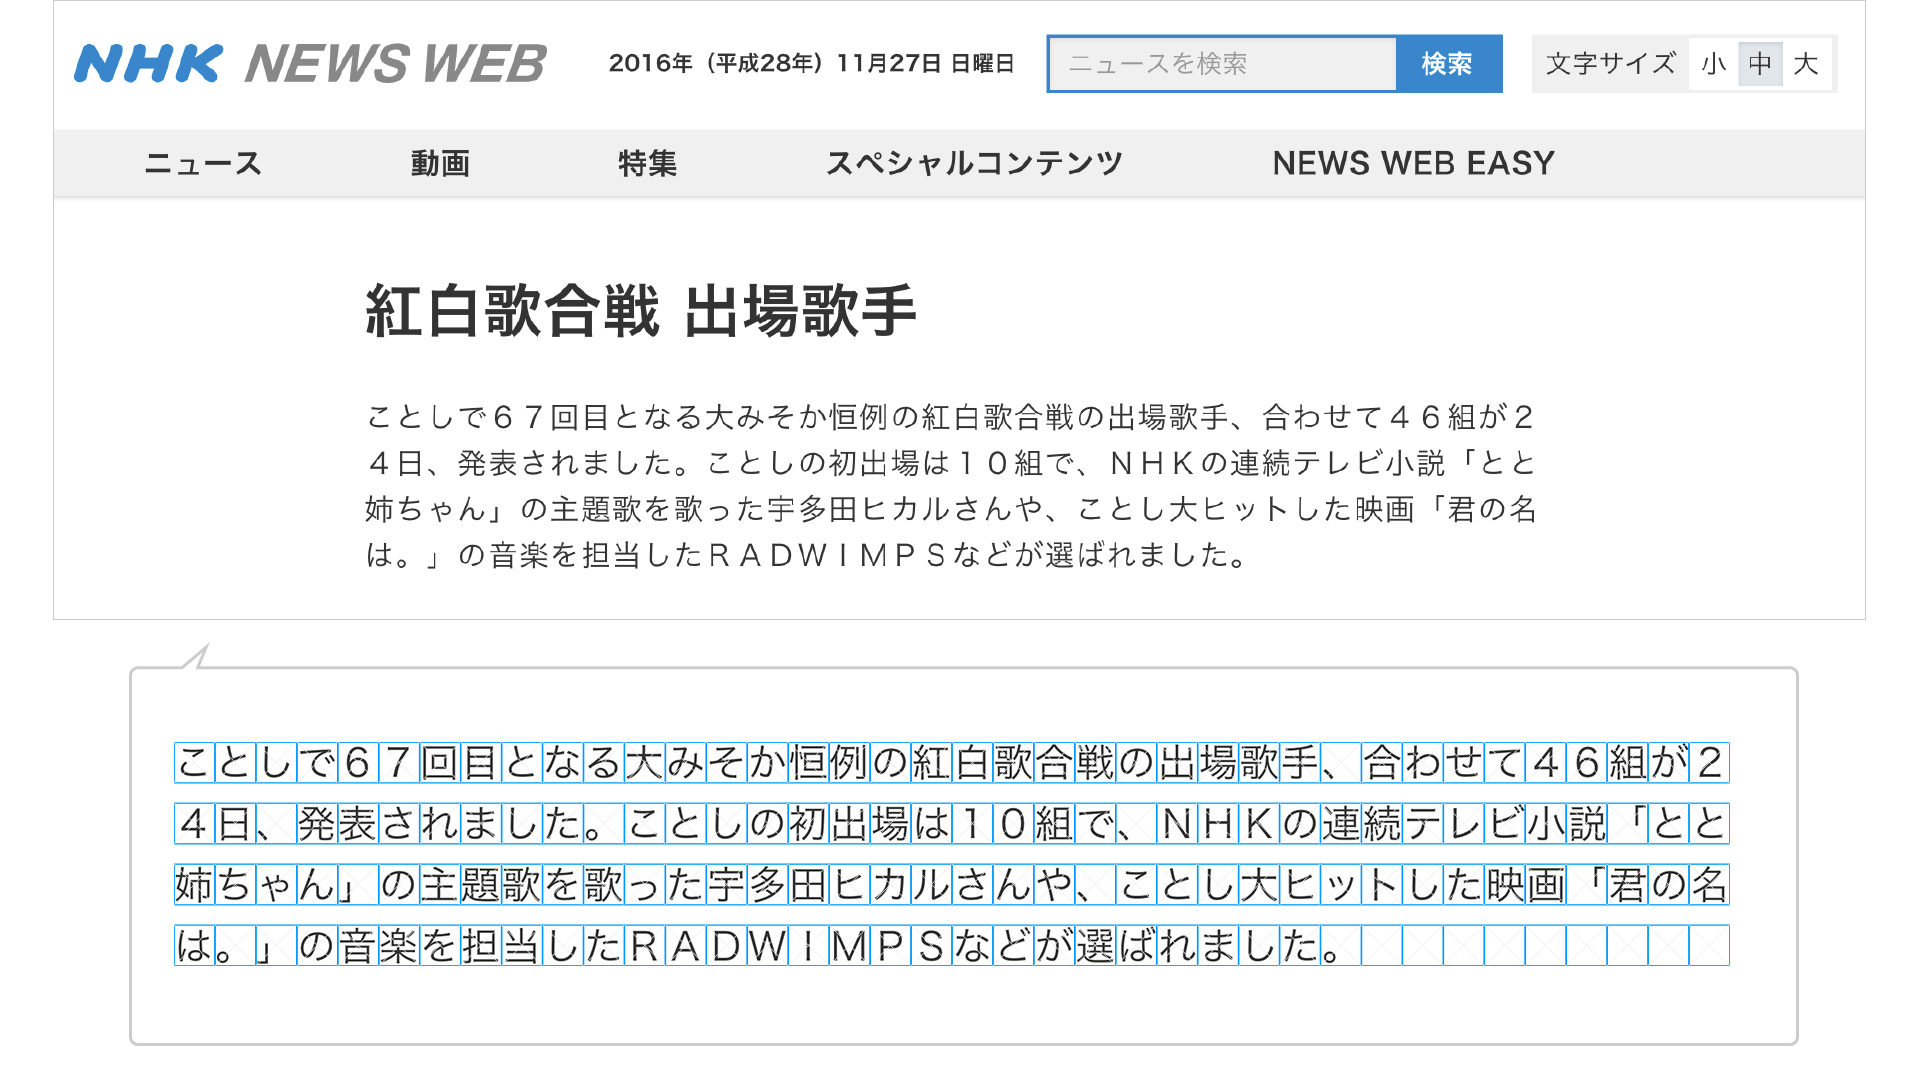 スクリーションショット：NHK NEWS WEB